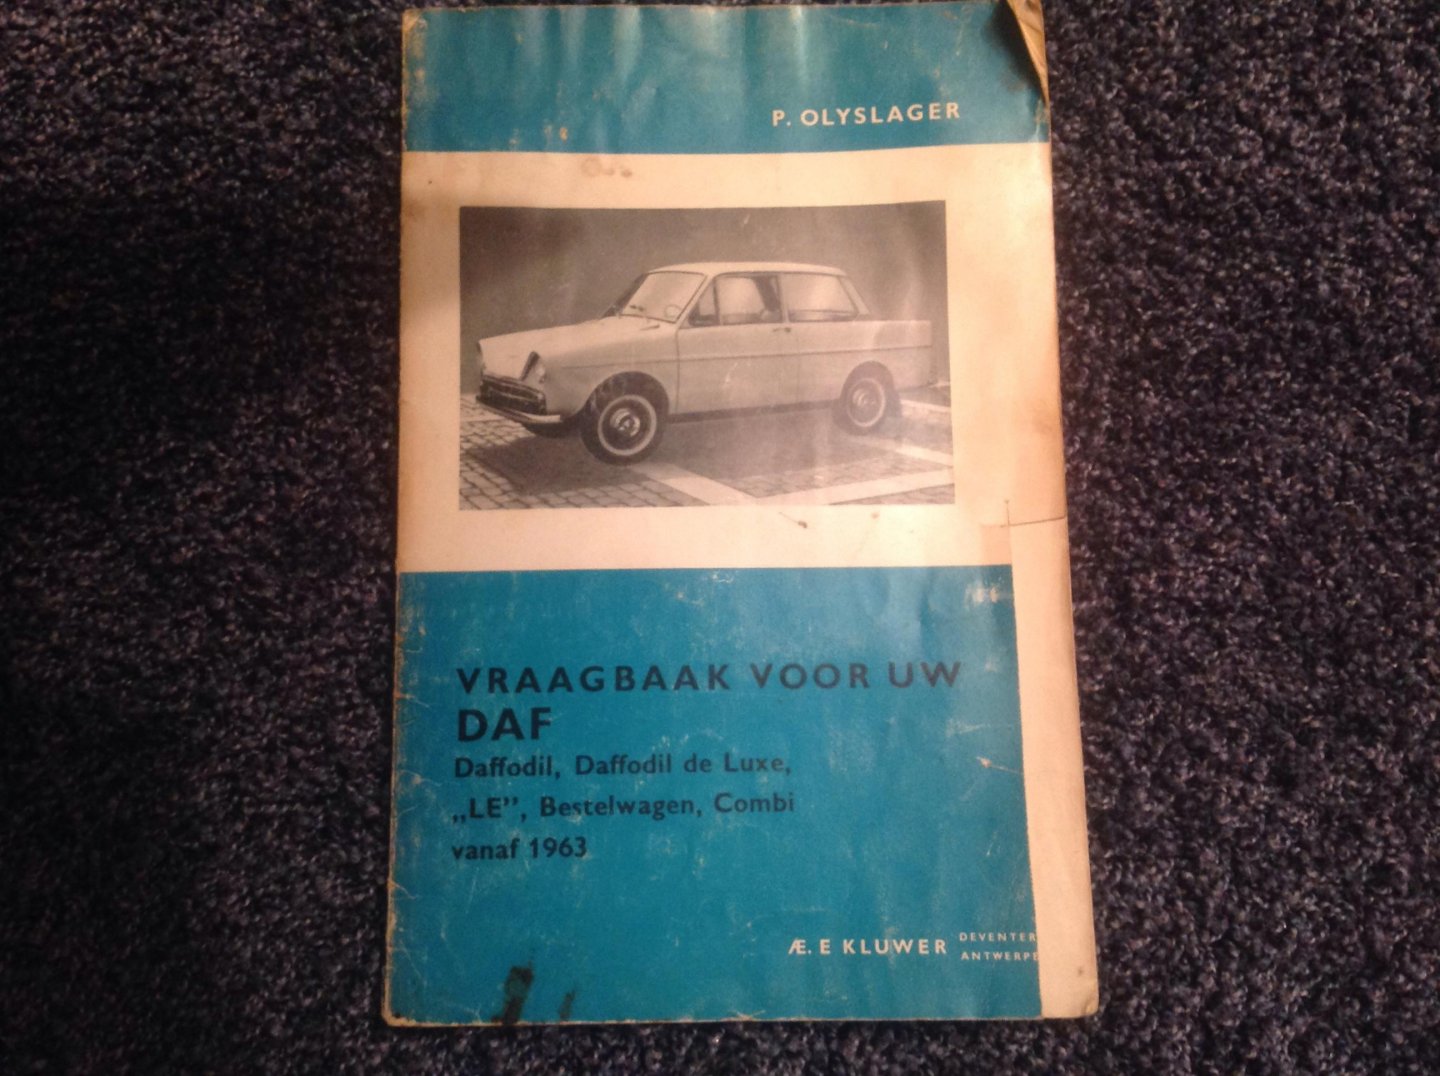 P. Olyslager - Vraagbaak voor uw Daf, Daffodil de Luxe, "LE", Bestelwagen, Combi vanaf 1963